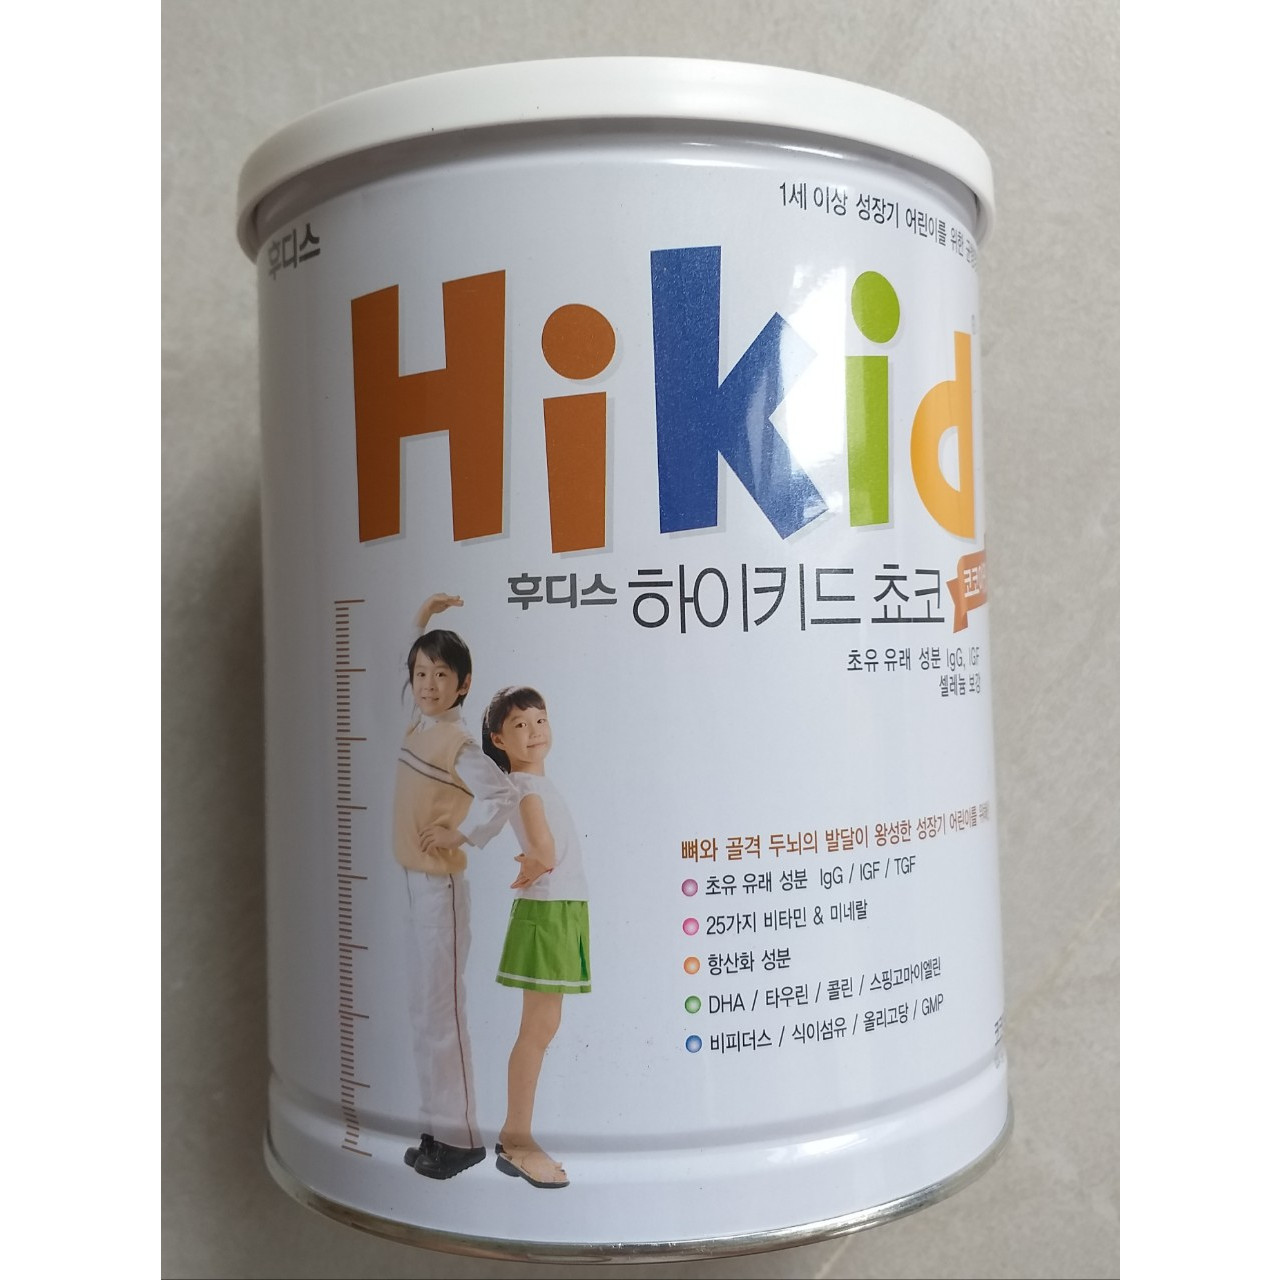 Bộ 2 Hộp Sữa Hikid vị Socola 650g - Hàng Nội địa Hàn